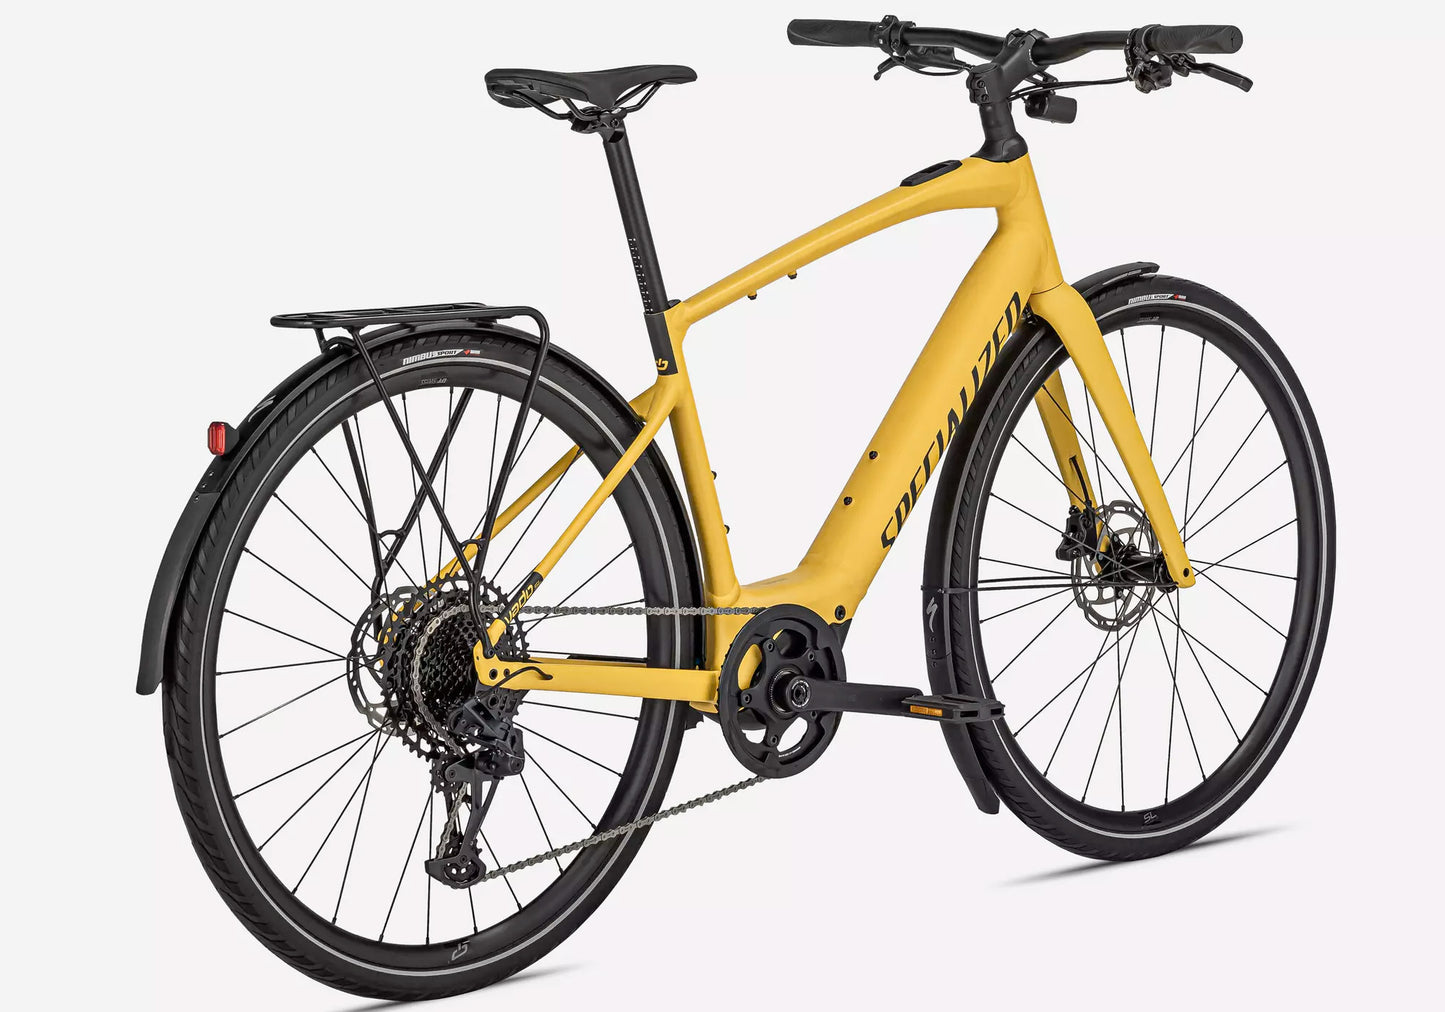 Specialized Turbo Vado SL 5.0 EQ Unisex Electric Urban Bike - Brassy Yellow